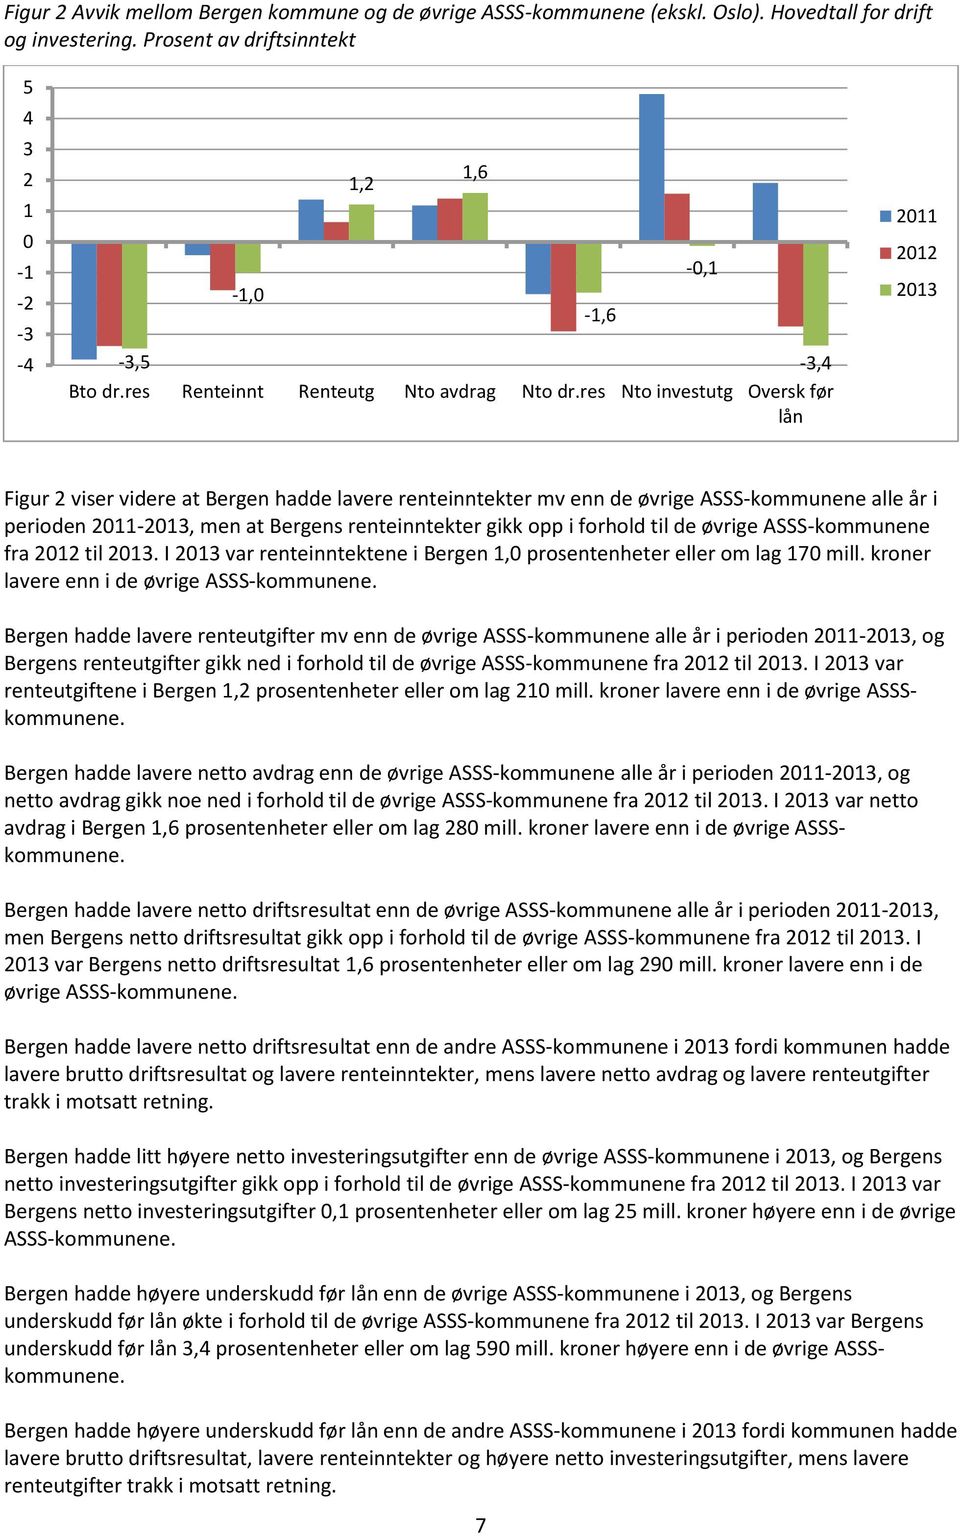 res Nto investutg Oversk før lån 1,6-1,6-0,1 2011 2012 2013 Figur 2 viser videre at Bergen hadde lavere renteinntekter mv enn de øvrige ASSS-kommunene alle år i perioden 2011-2013, men at Bergens